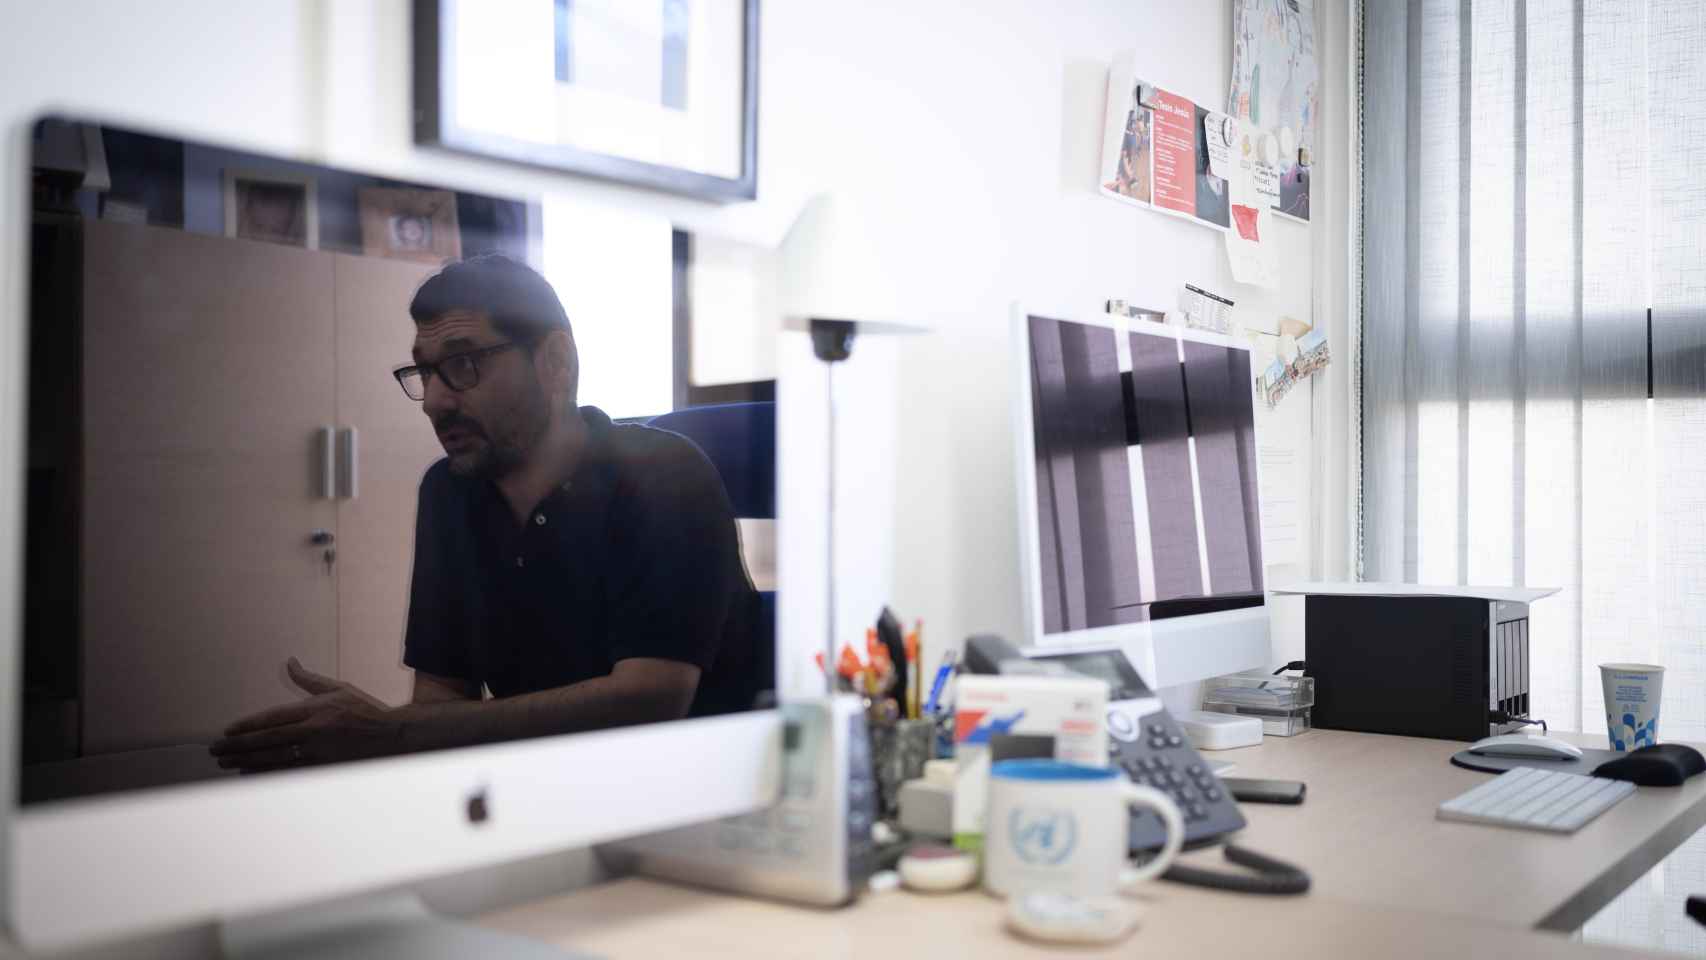 Calderón reflejado en el ordenador de su despacho.